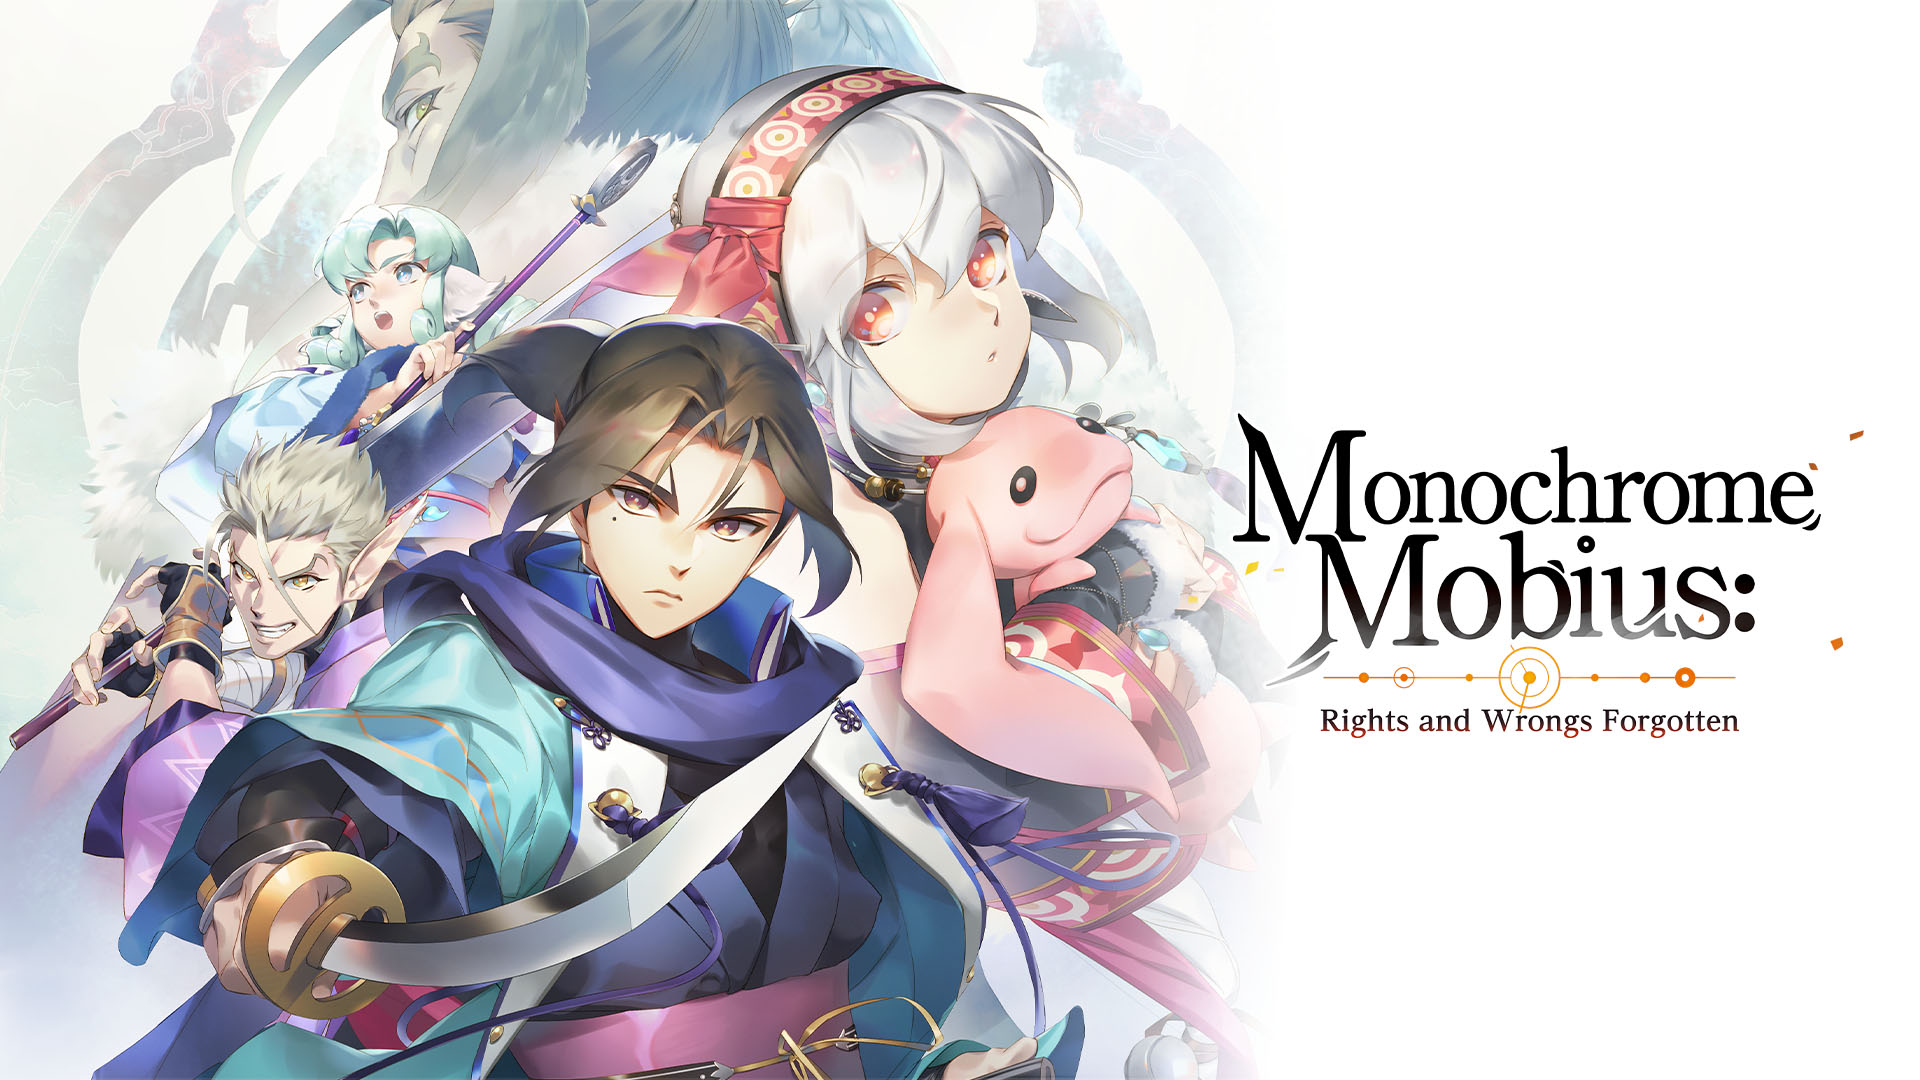 Monochrome Mobius: Rights and Wrongs Forgotten vychází 8. září na PS5 a PS4 v Japonsku a PC po celém světě